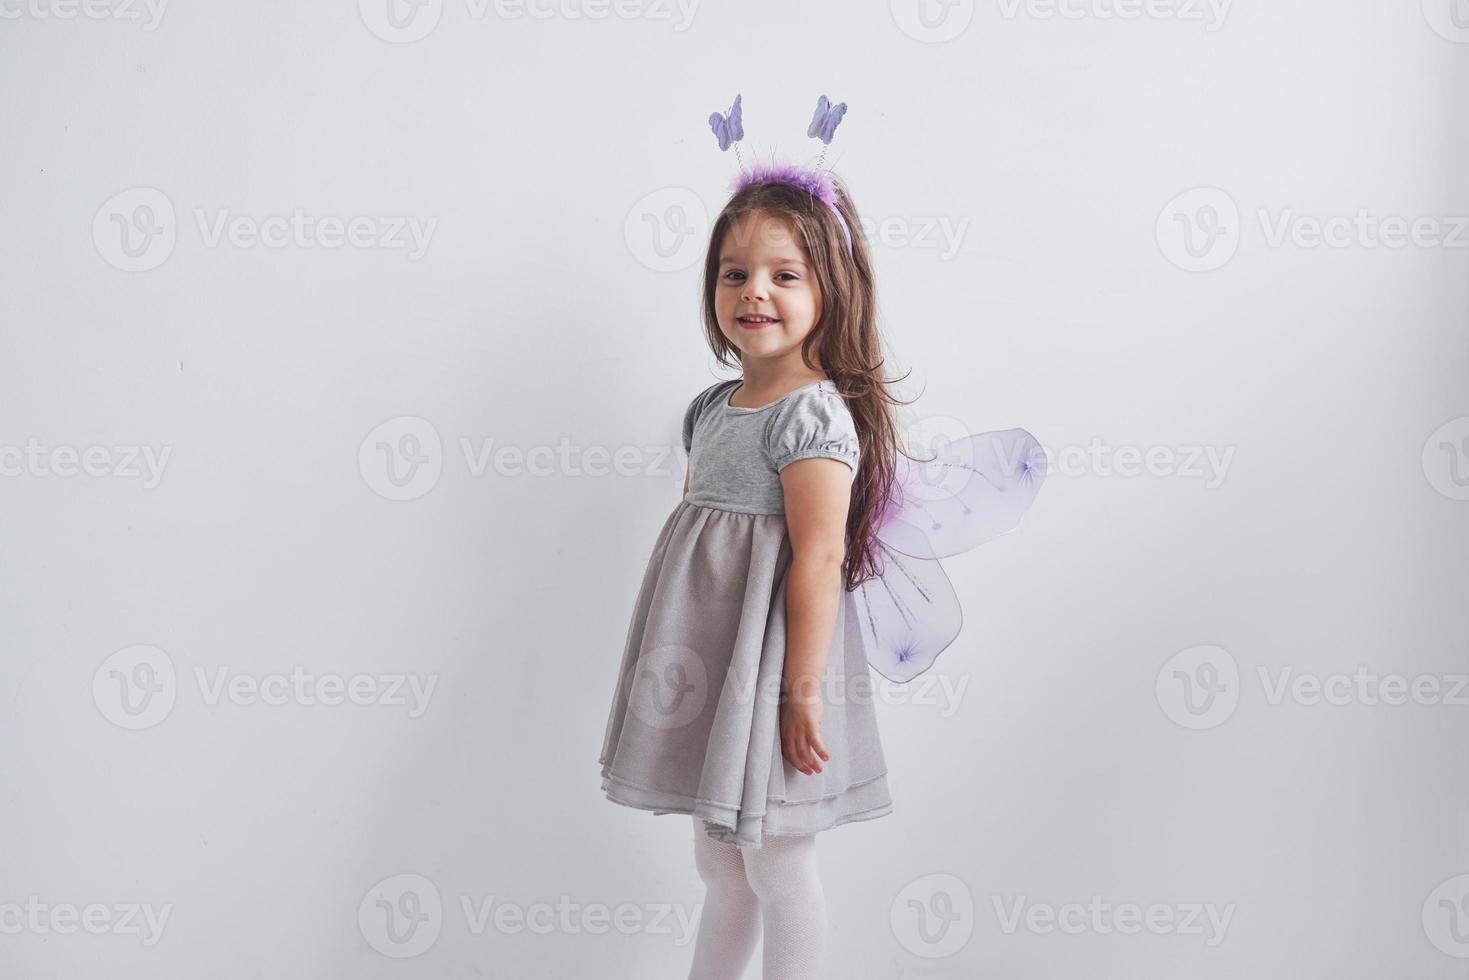 mooi klein meisje in het sprookjeskostuum dat in de kamer staat met een witte achtergrond foto